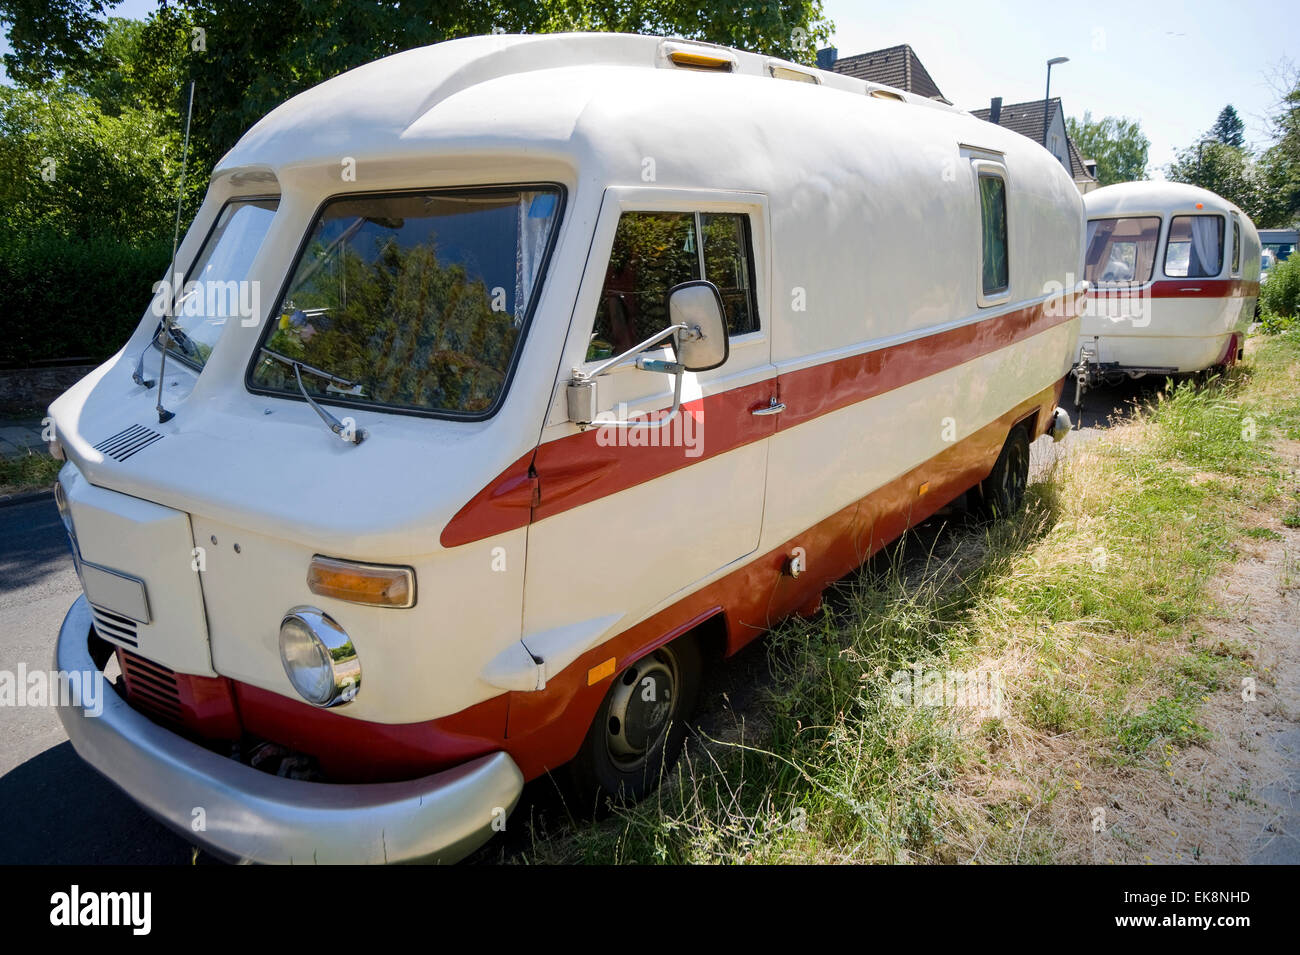 Vintage old-timer camper (RV, recreational vehicle) parking at roadside Stock Photo